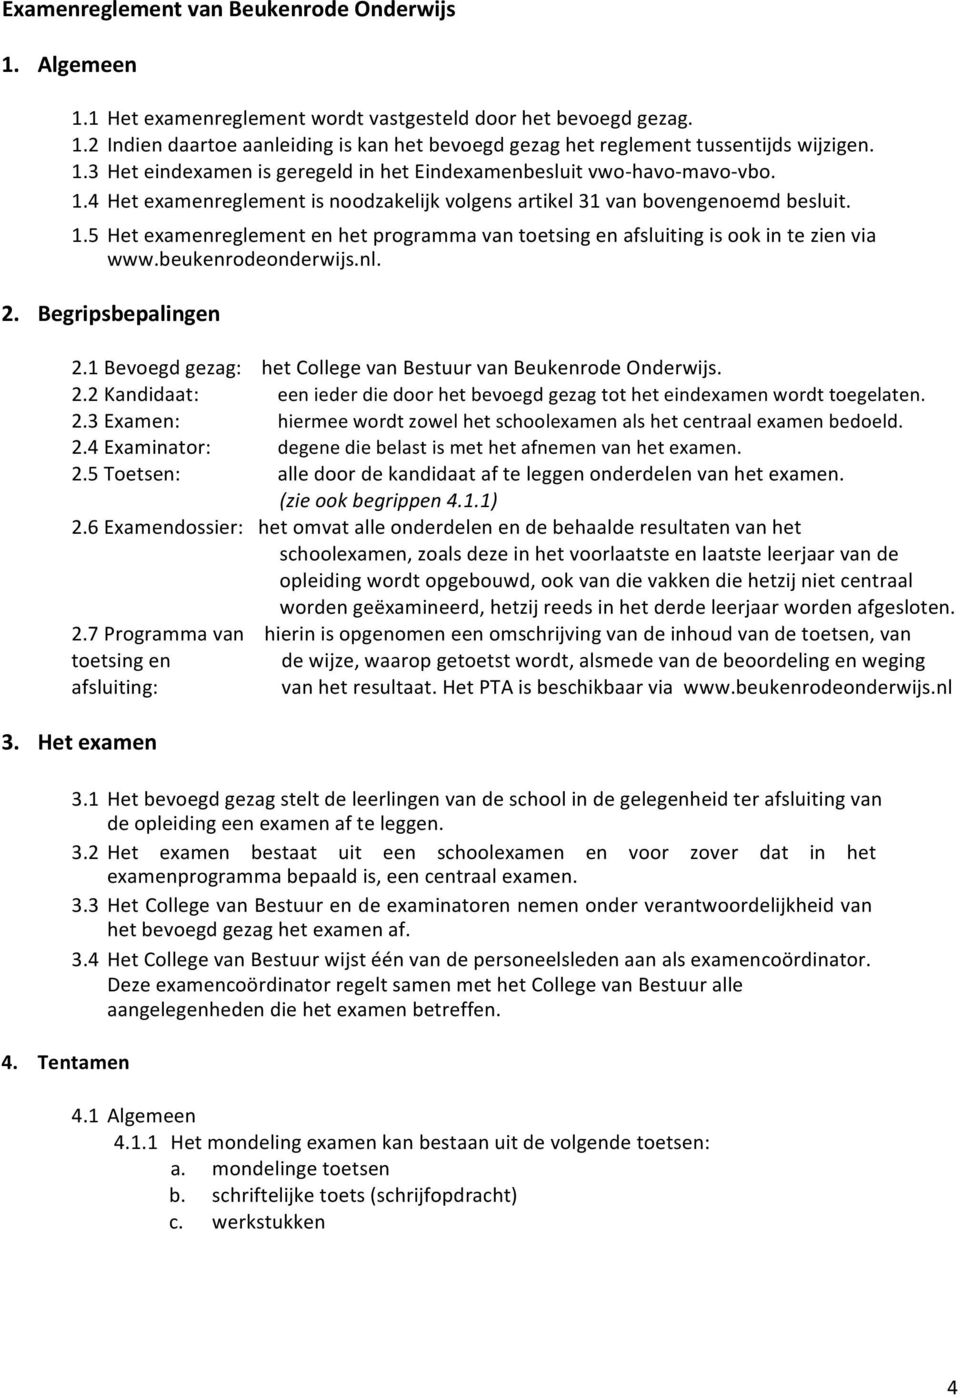 beukenrodeonderwijs.nl. 2. Begripsbepalingen 2.1 Bevoegd gezag: het College van Bestuur van Beukenrode Onderwijs. 2.2 Kandidaat: een ieder die door het bevoegd gezag tot het eindexamen wordt toegelaten.